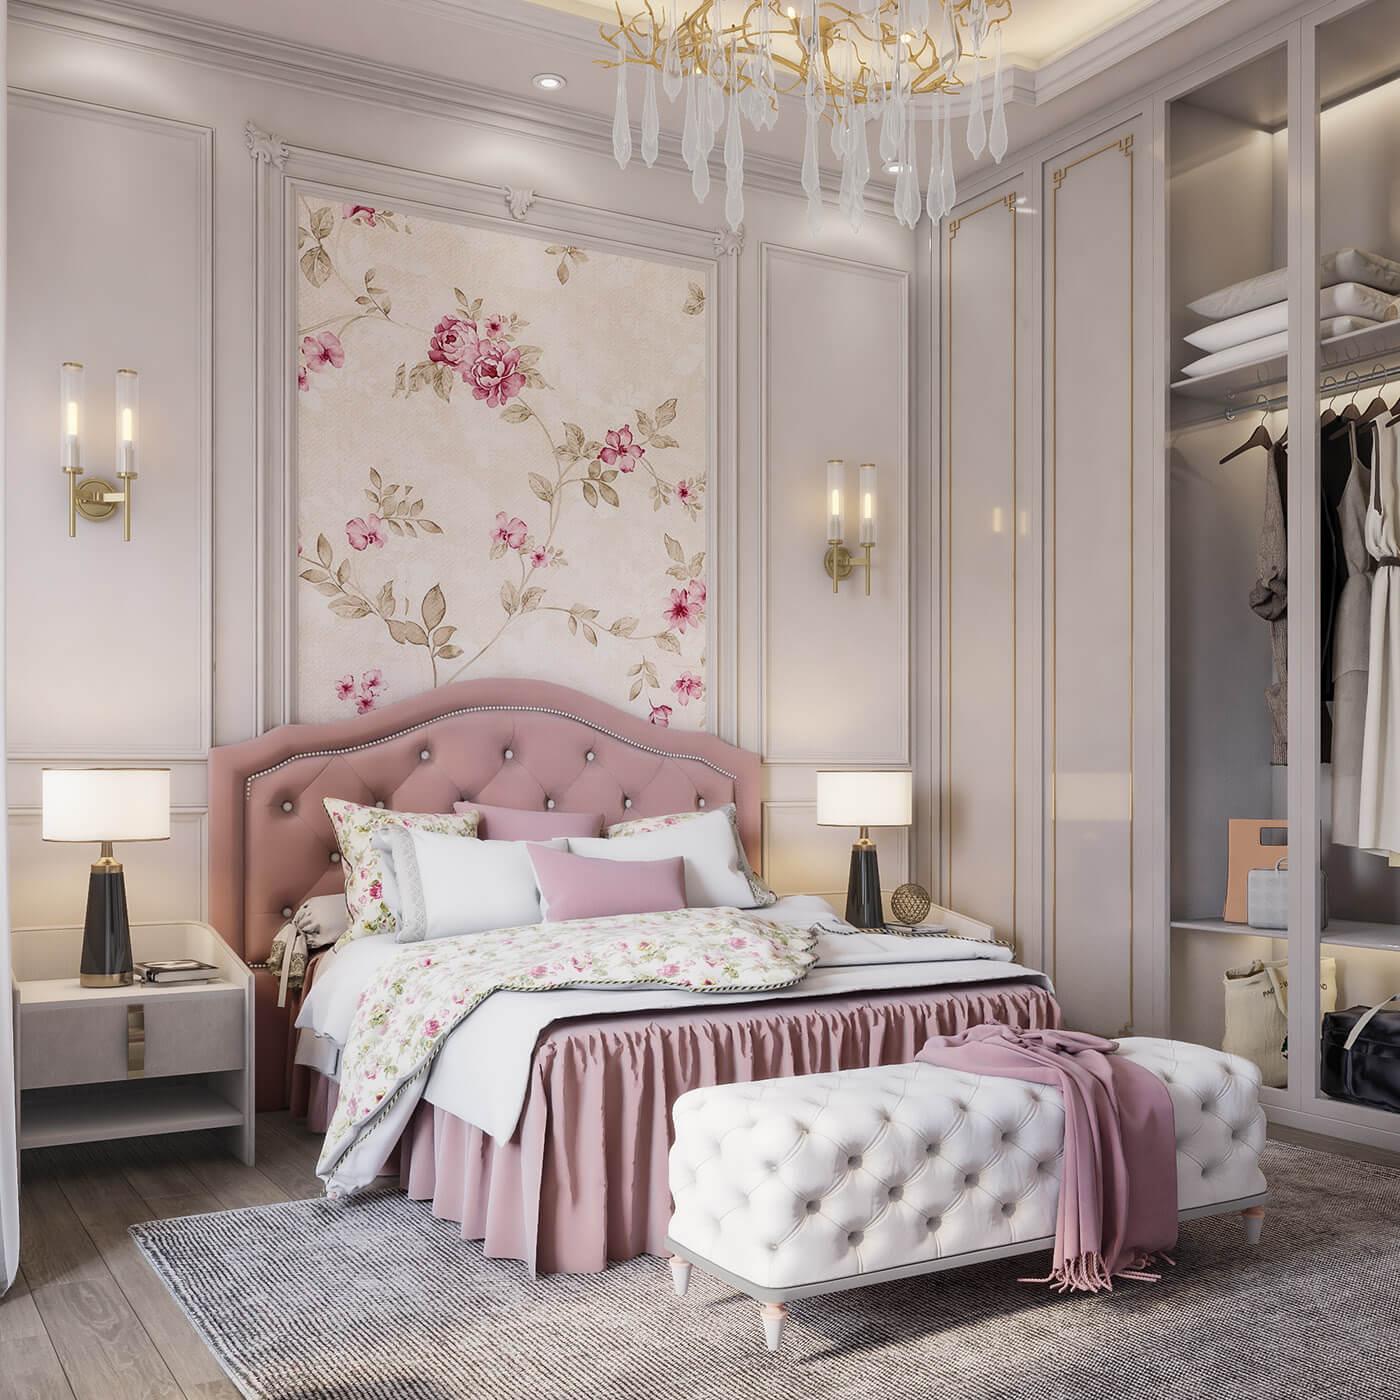 Mẫu trang trí phòng ngủ màu hồng nhạt đẹp